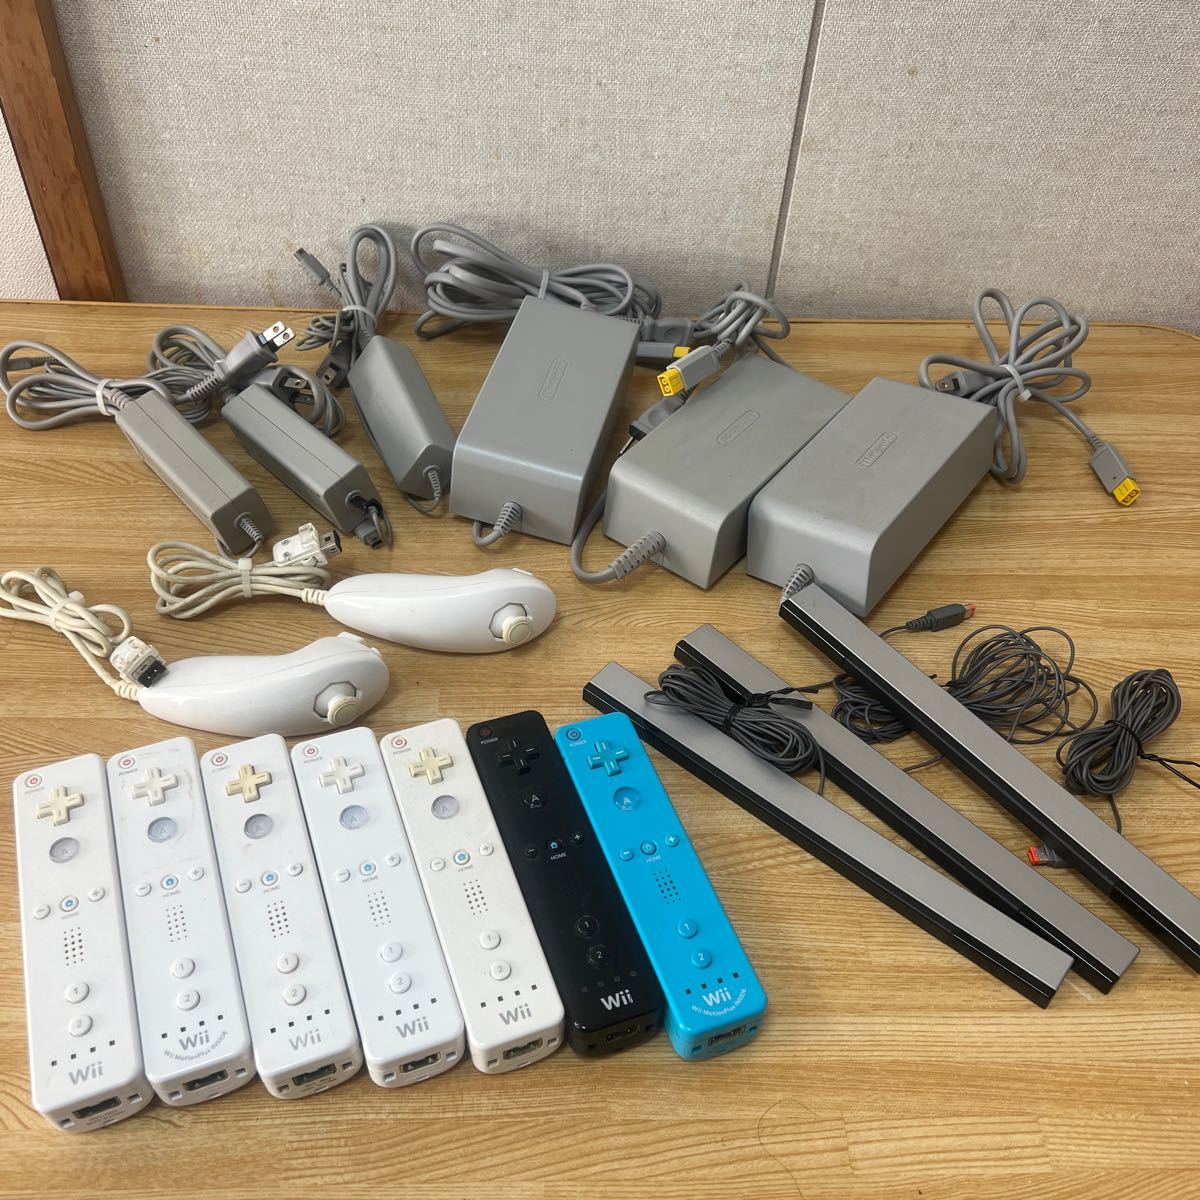 任天堂 Wii & WiiU 本体 リモコン コントローラーまとめ商品_画像2